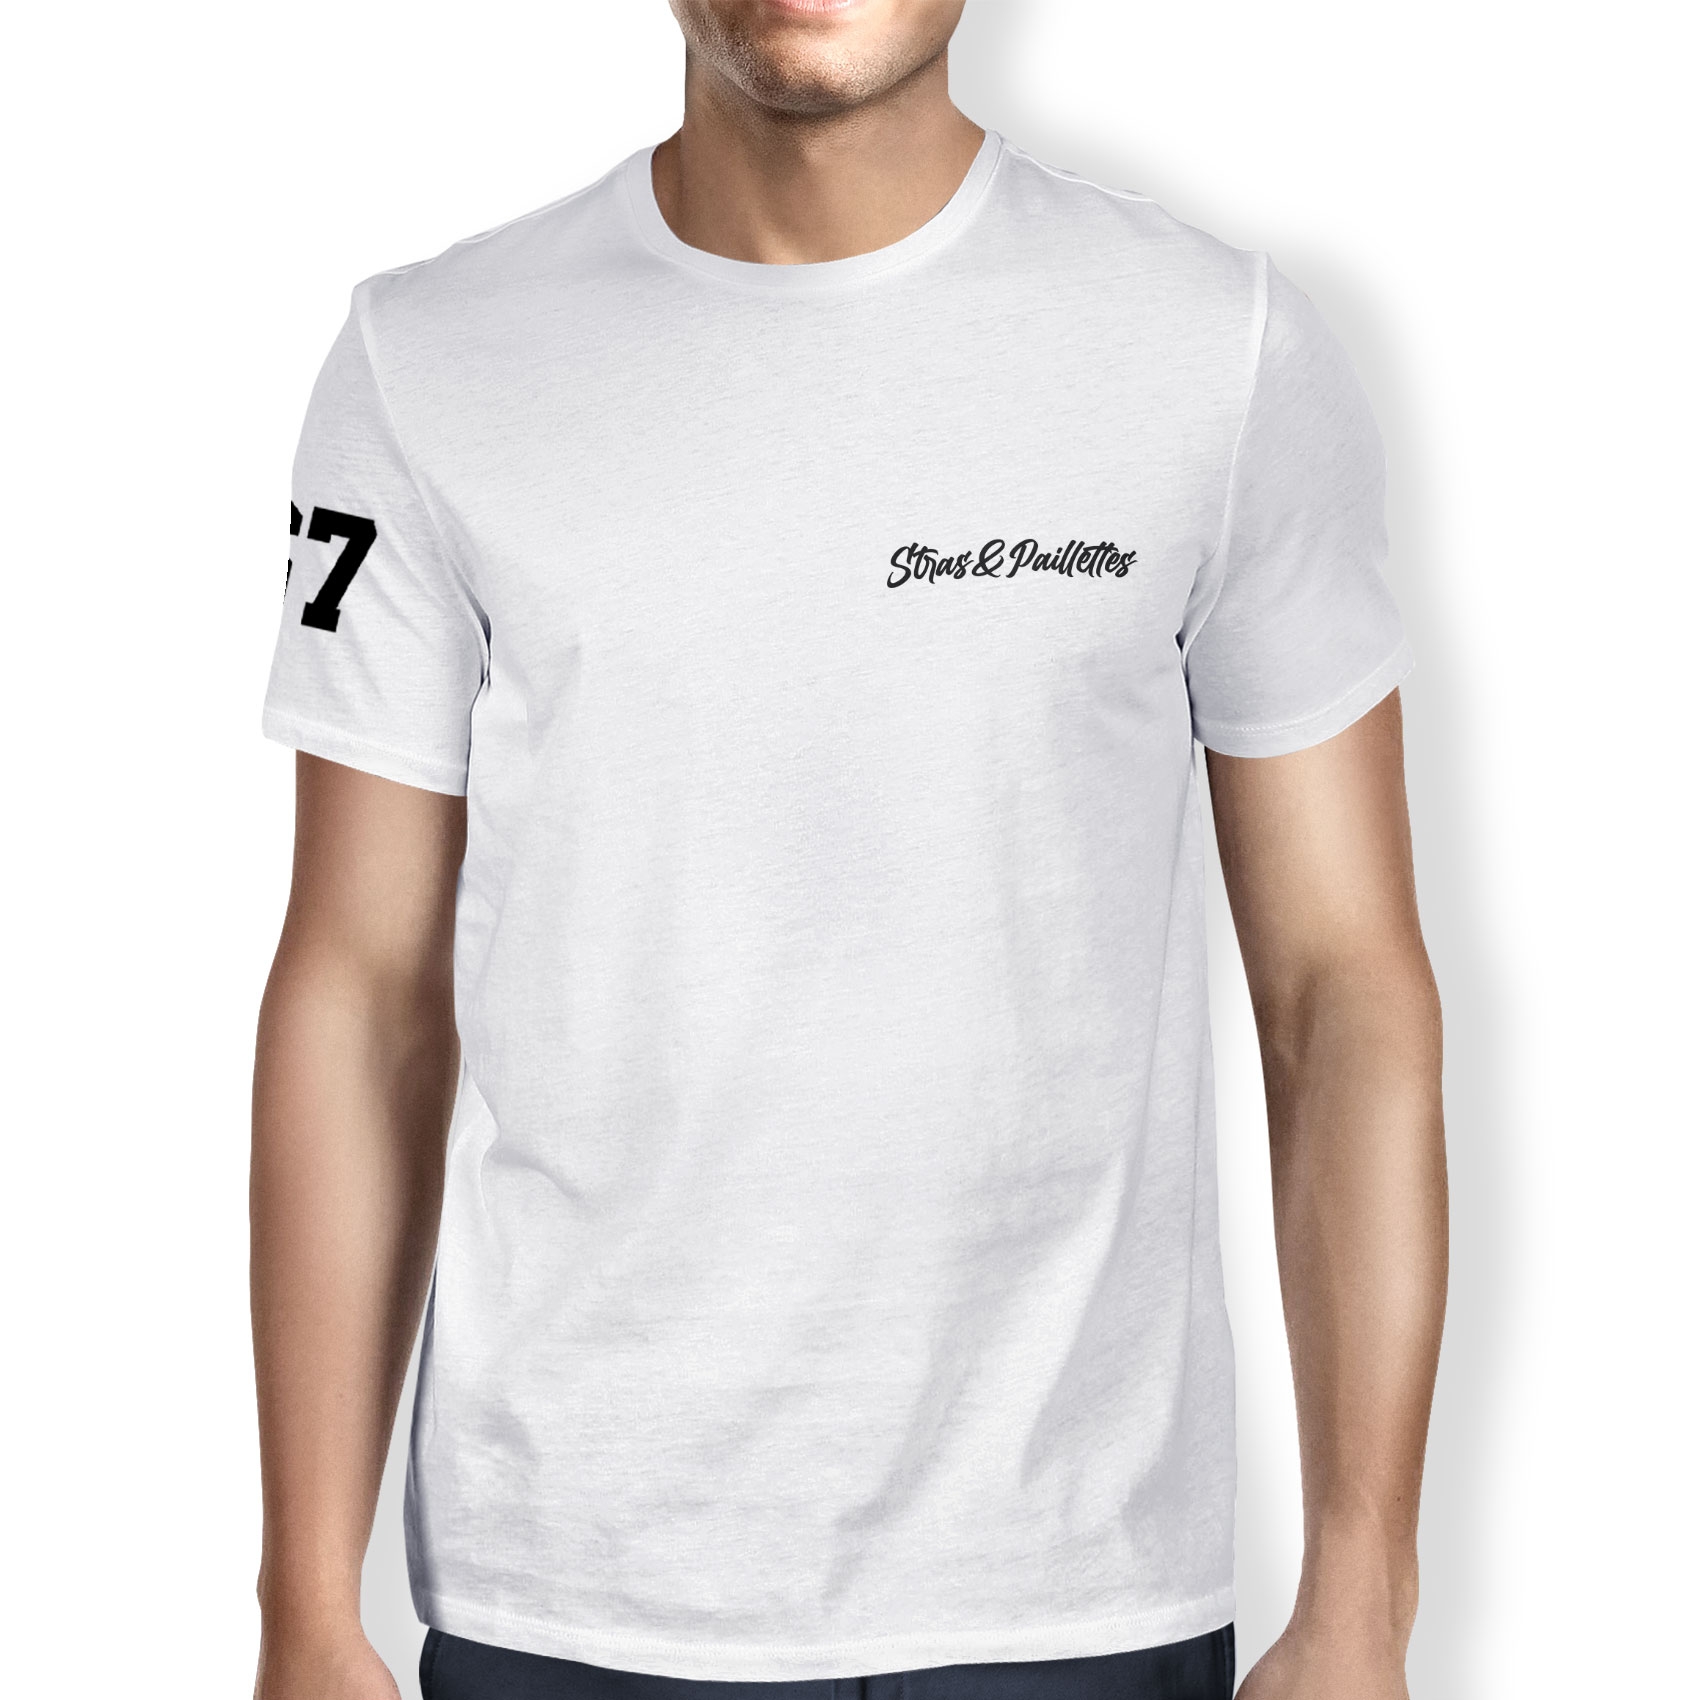 Tshirt Stras & Paillettes modèle 7 SP2 de stras & paillettes sur Scredboutique.com